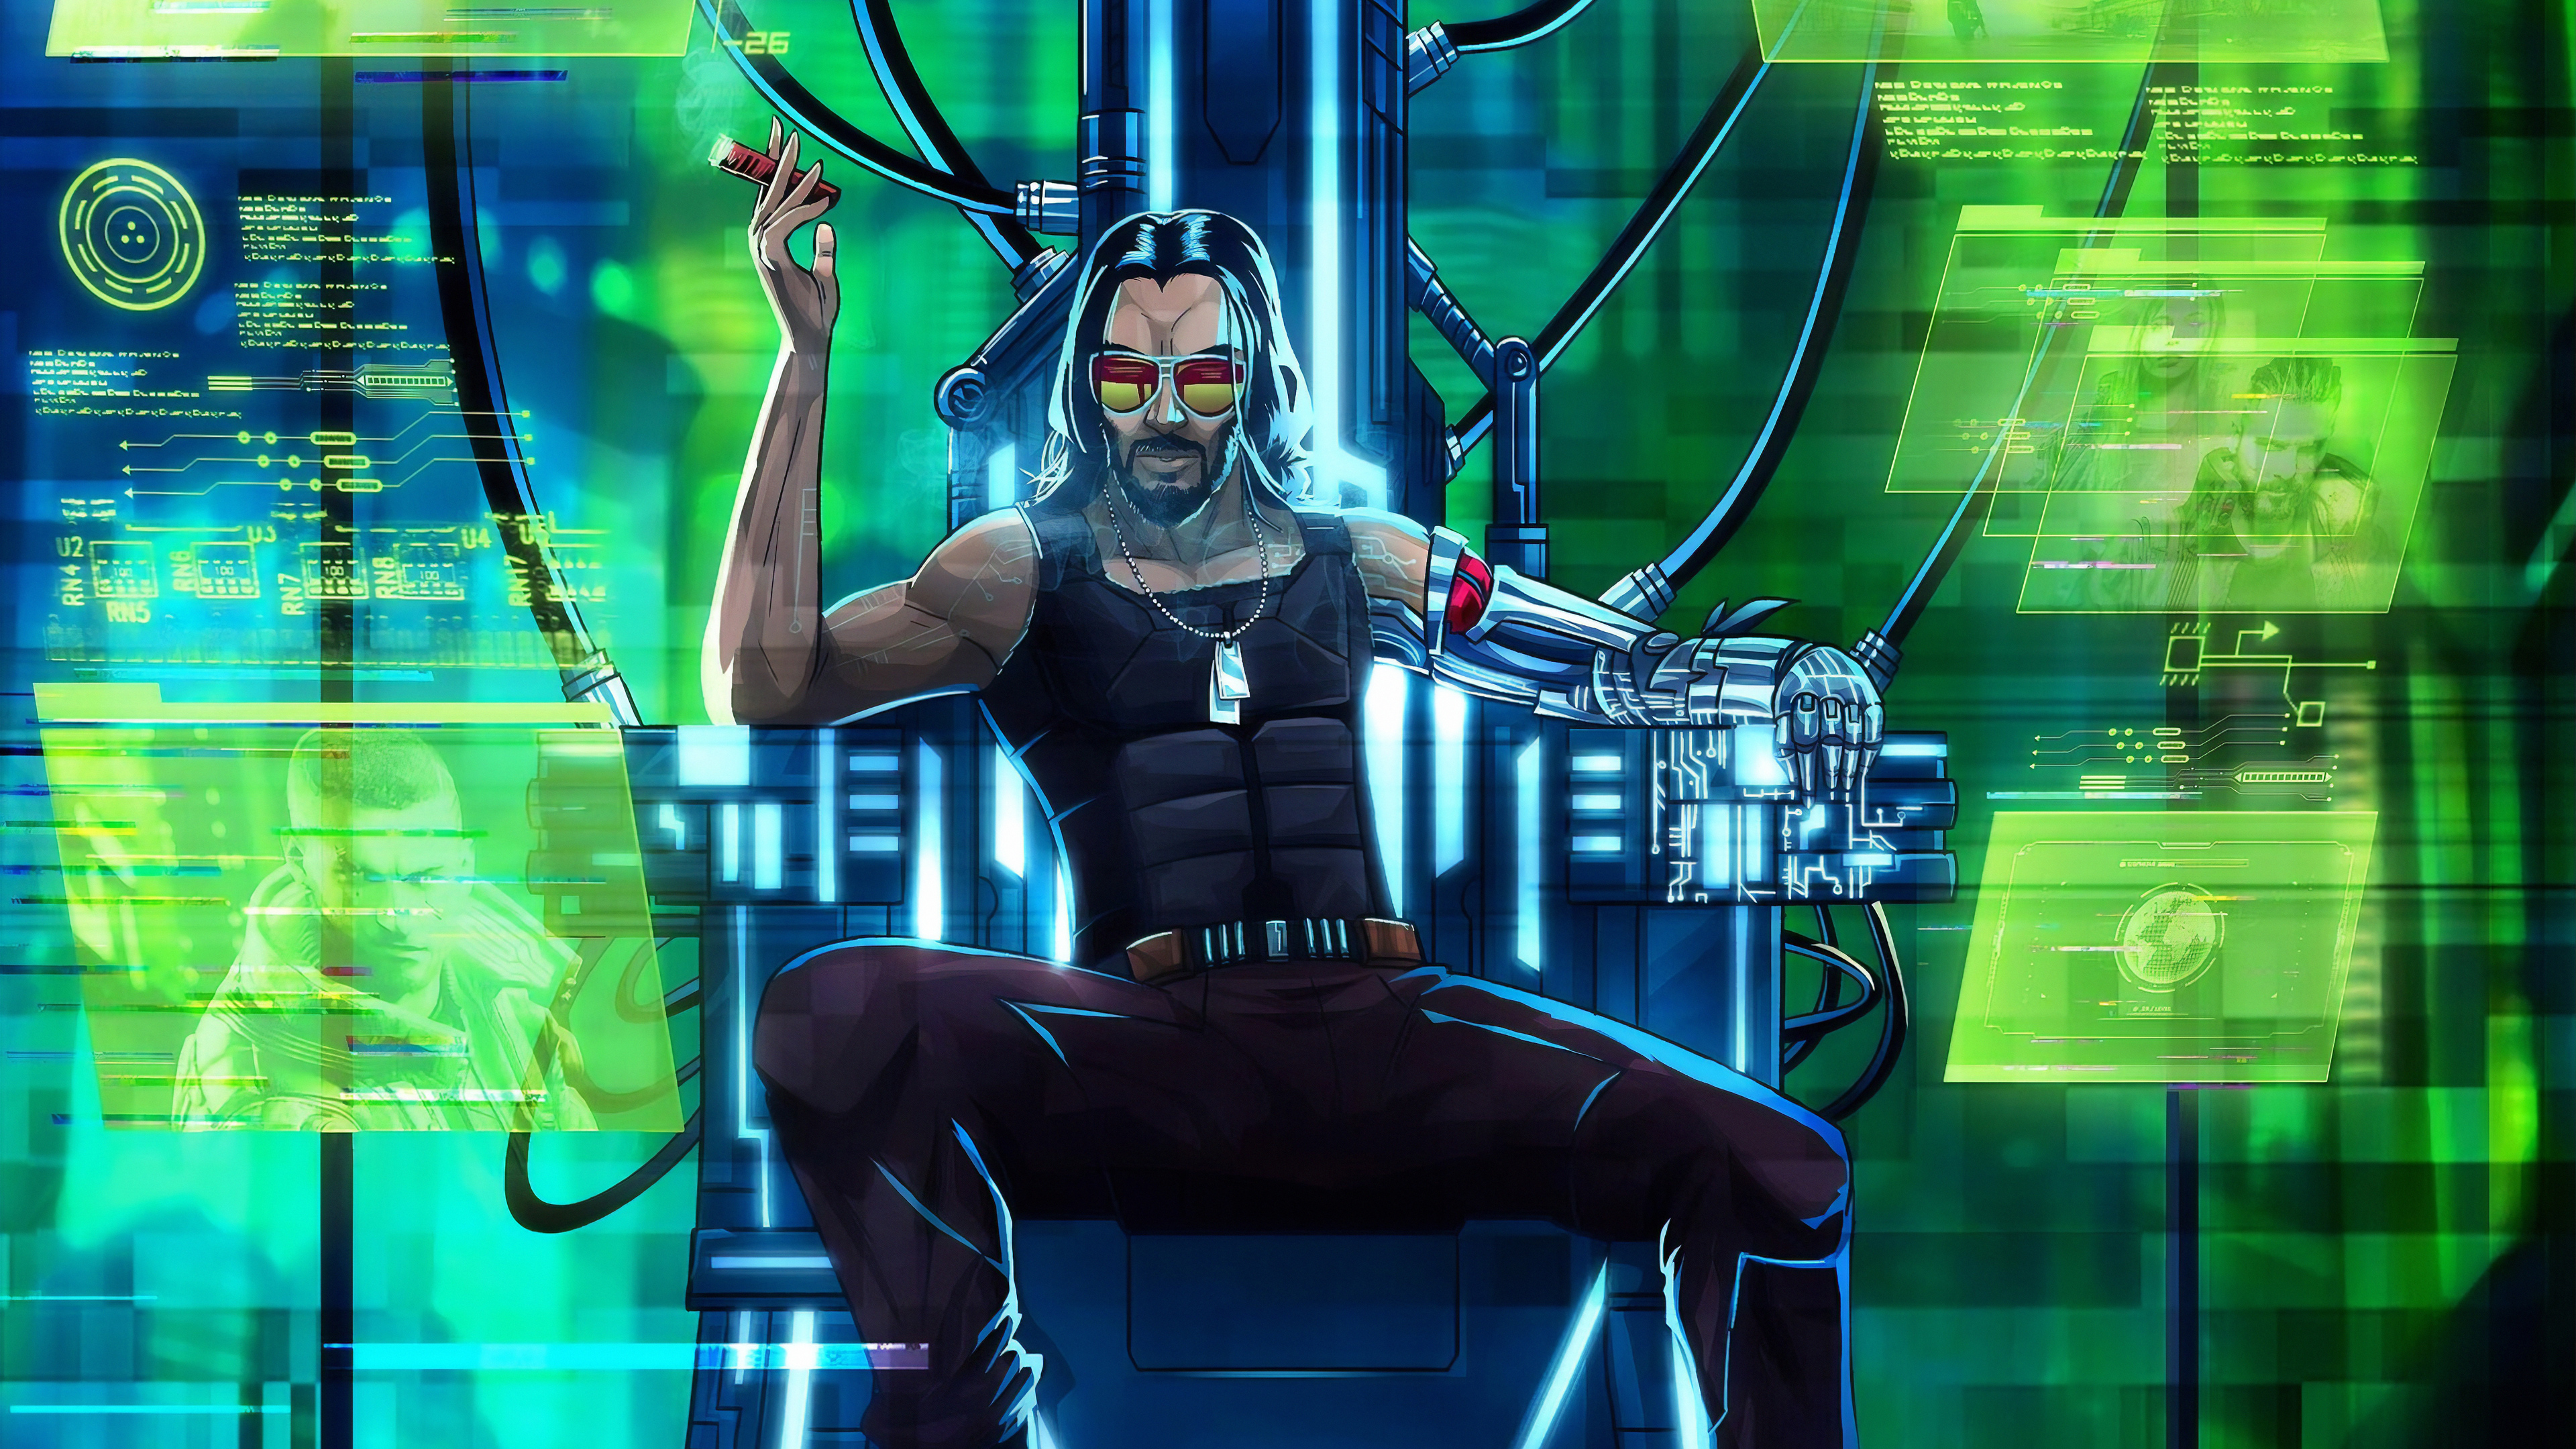 Cyberpunk 2077 Wallpaper 4K - geez not another one : r/cyberpunkgame